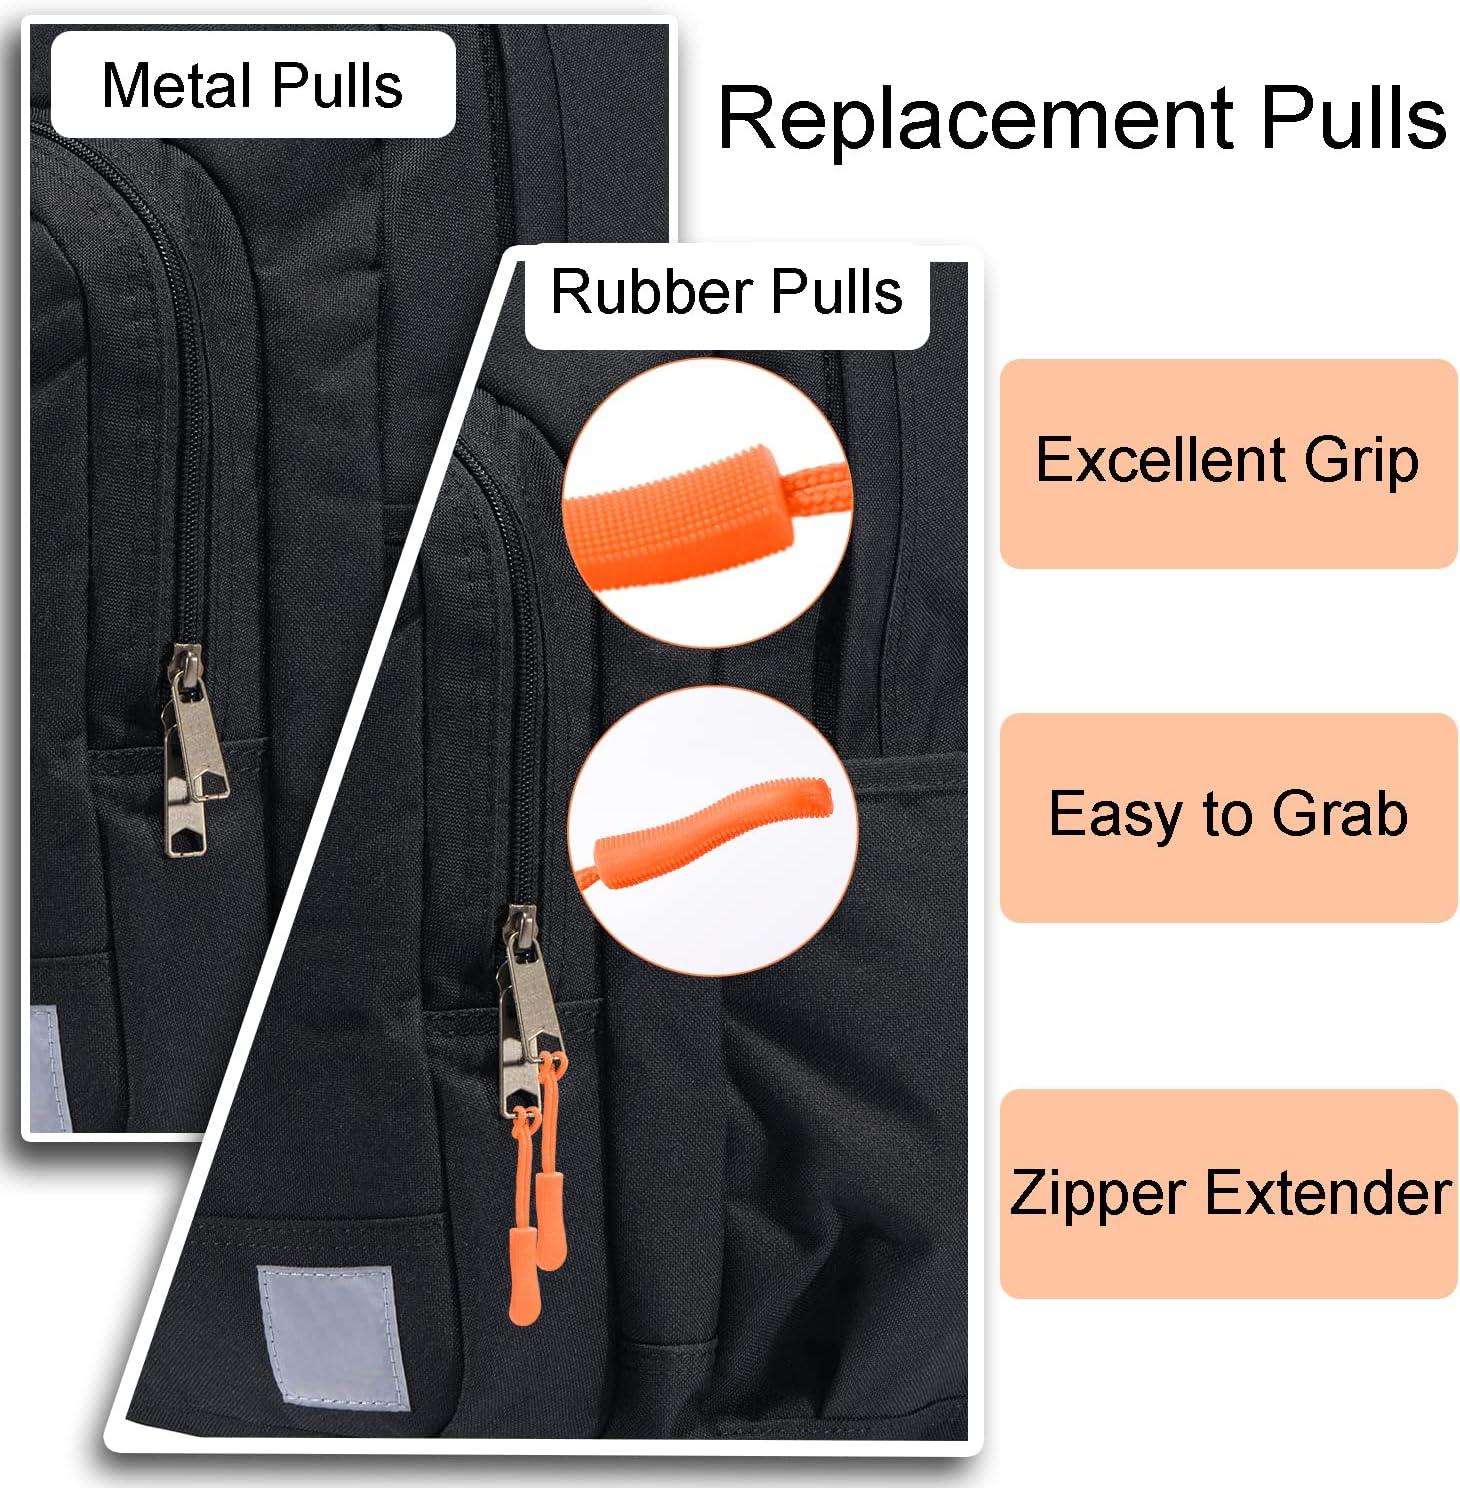 CooBigo Zipper Pull Replacement Golf Bag Zipper Pull Replacement